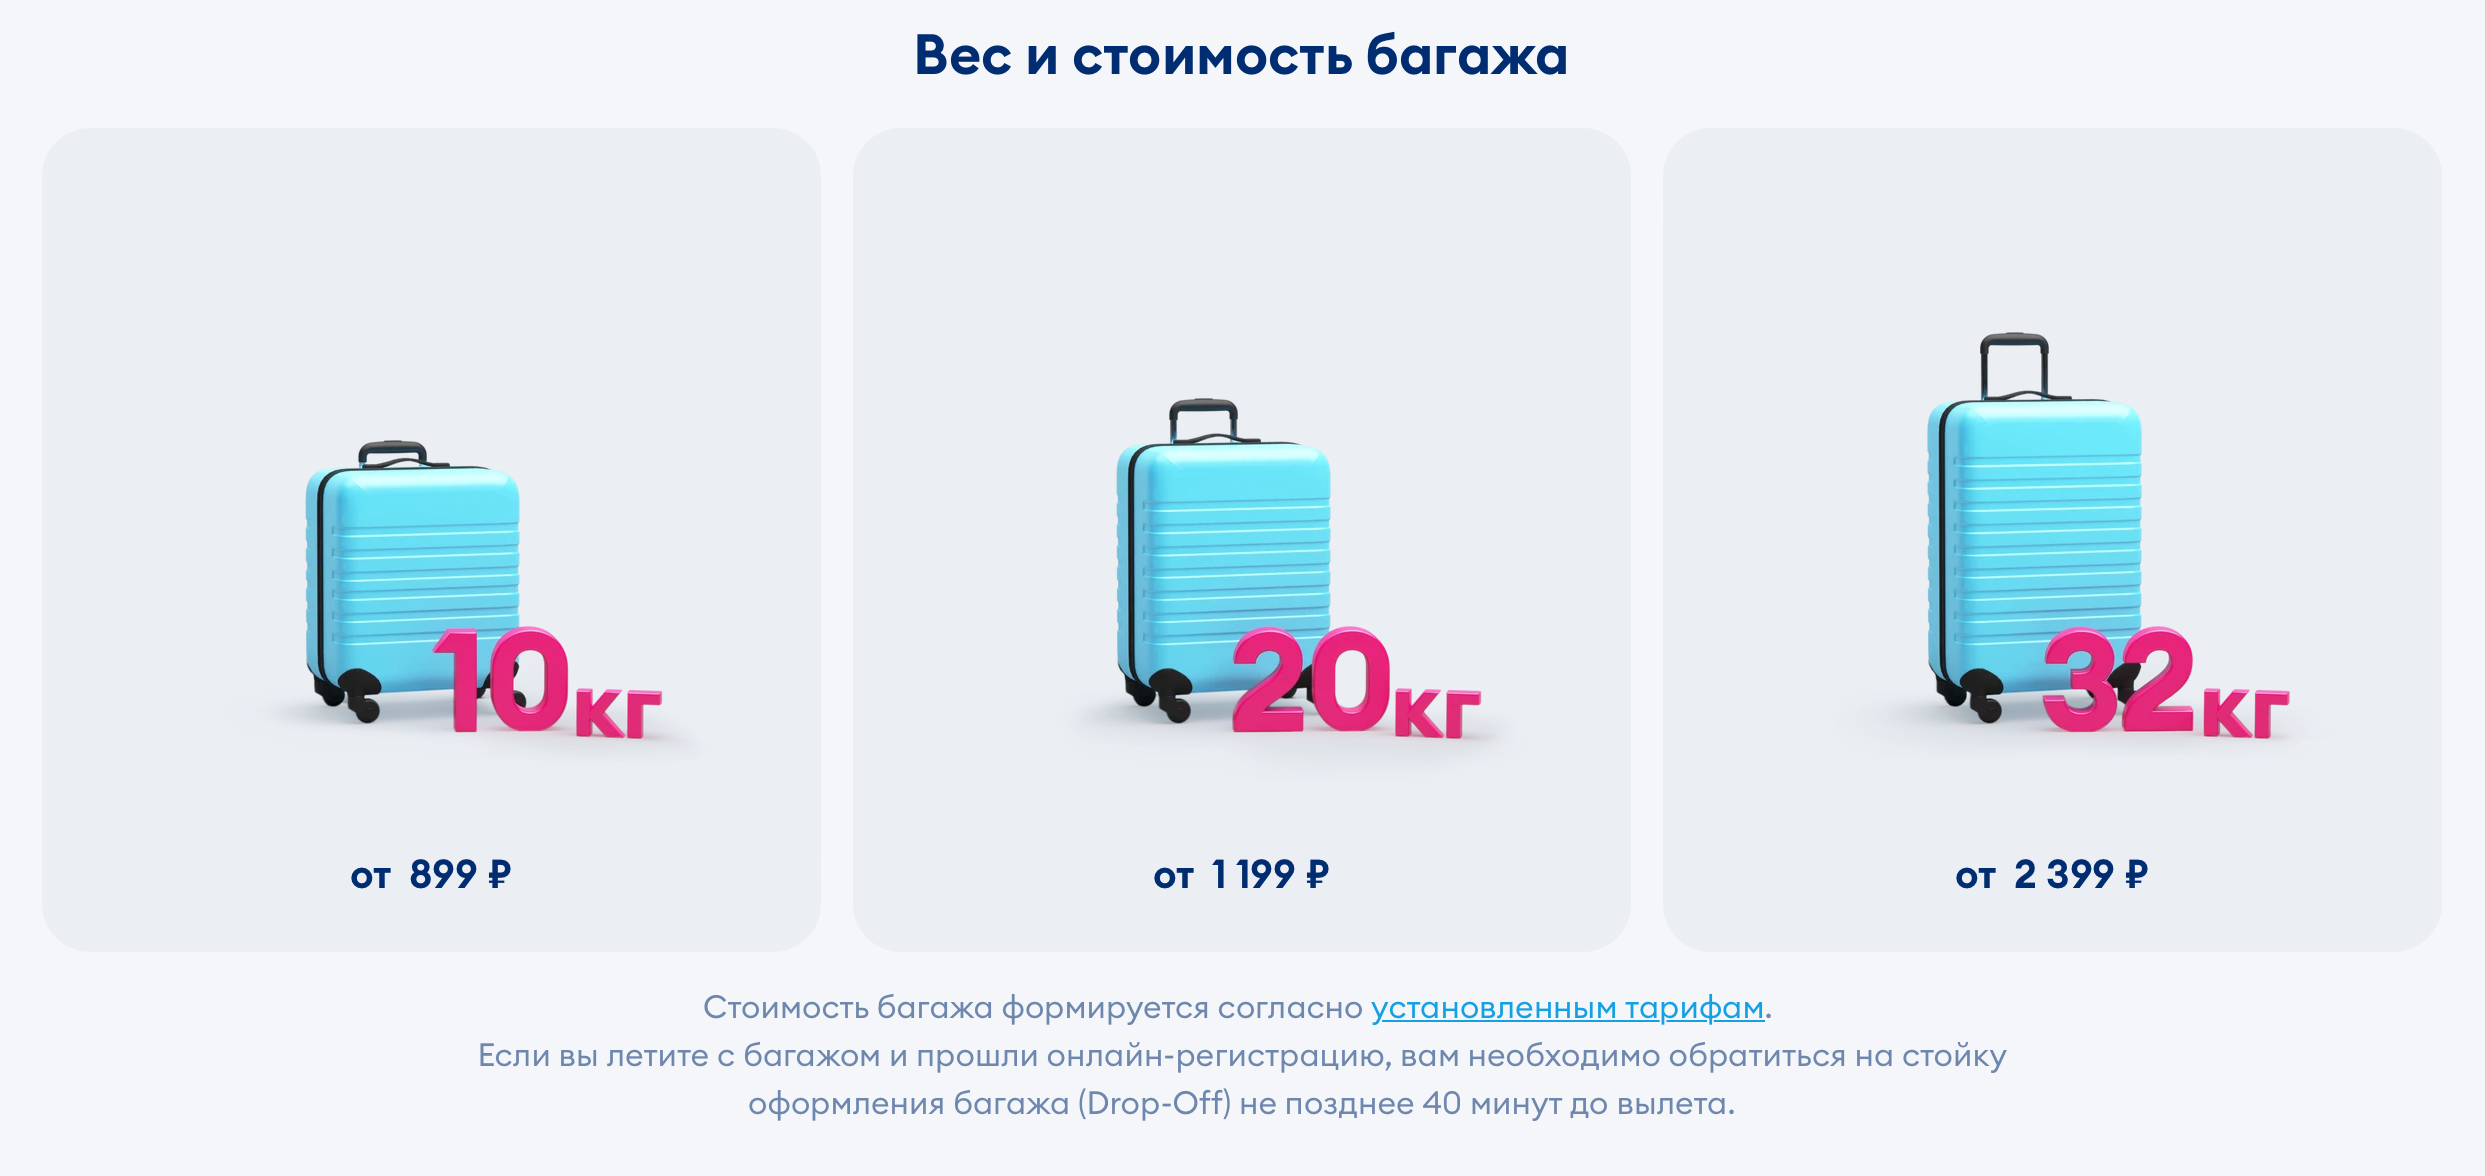 Стоимость провоза багажа у лоукостера «Победа» в 2023 году. Источник: pobeda.aero